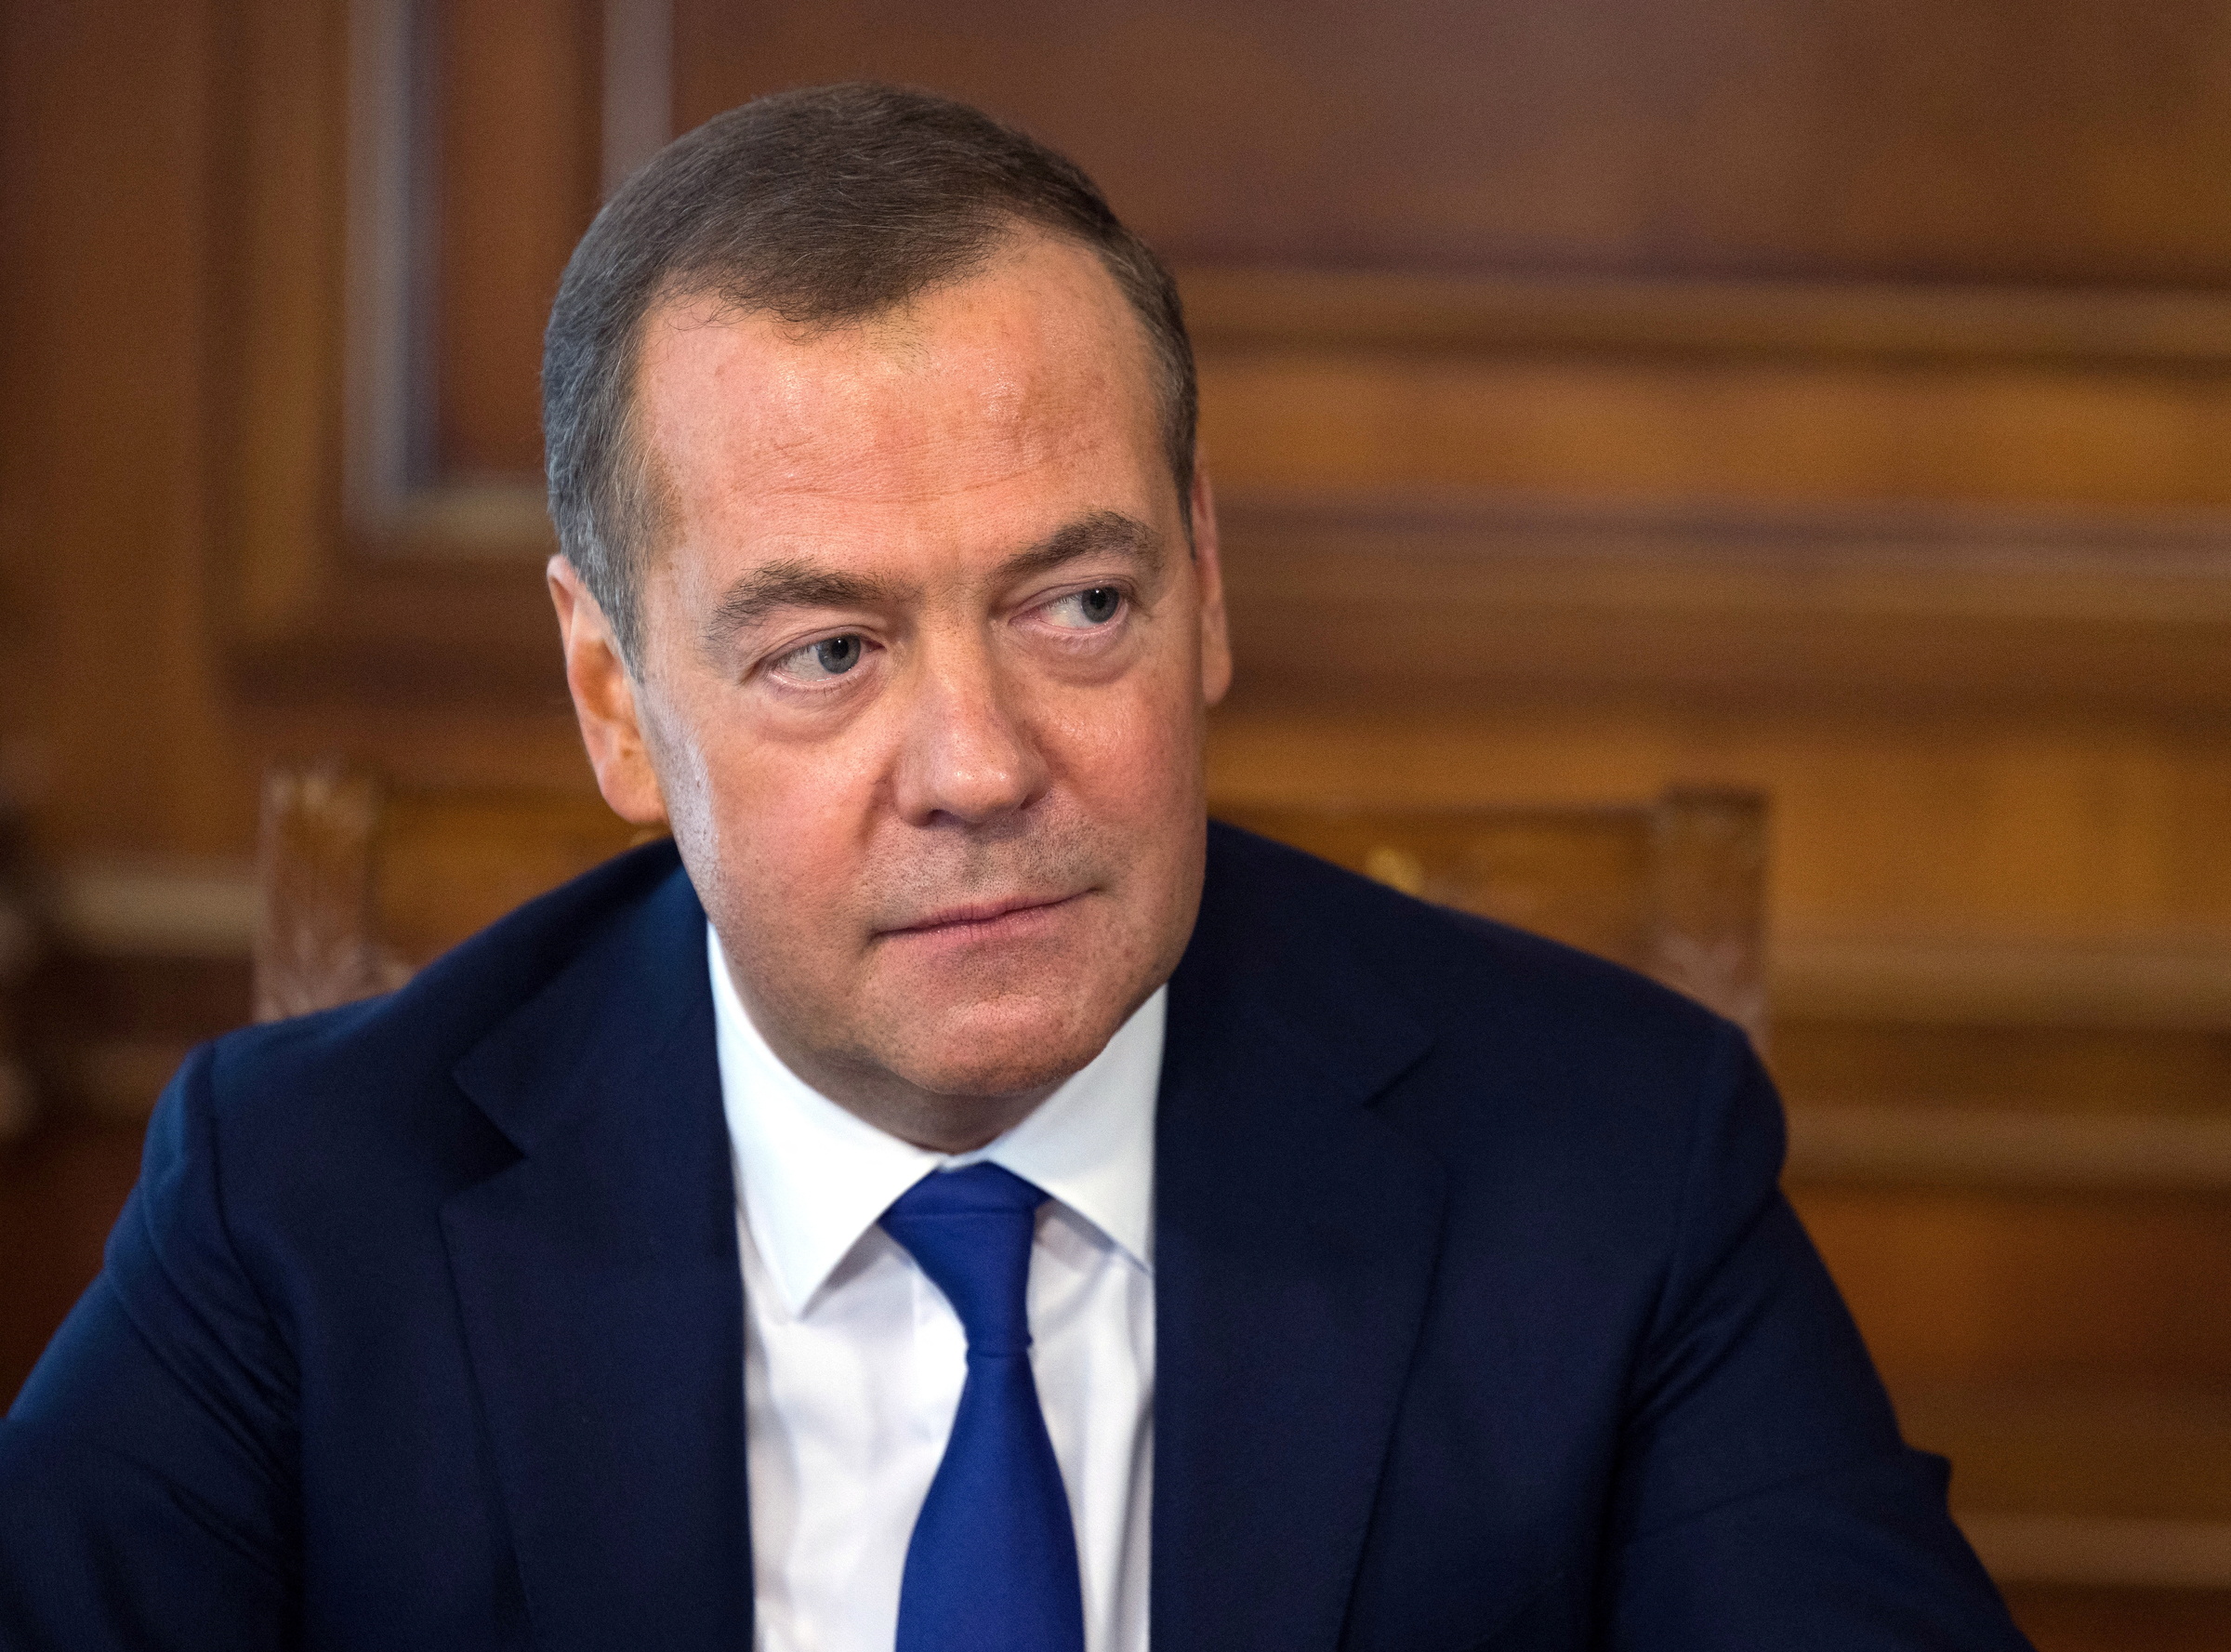 Phó chủ tịch Hội đồng An ninh Nga Dmitry Medvedev trả lời phỏng vấn tại dinh thự ở ngoại ô Moskva hồi tháng 3. Ảnh: Reuters